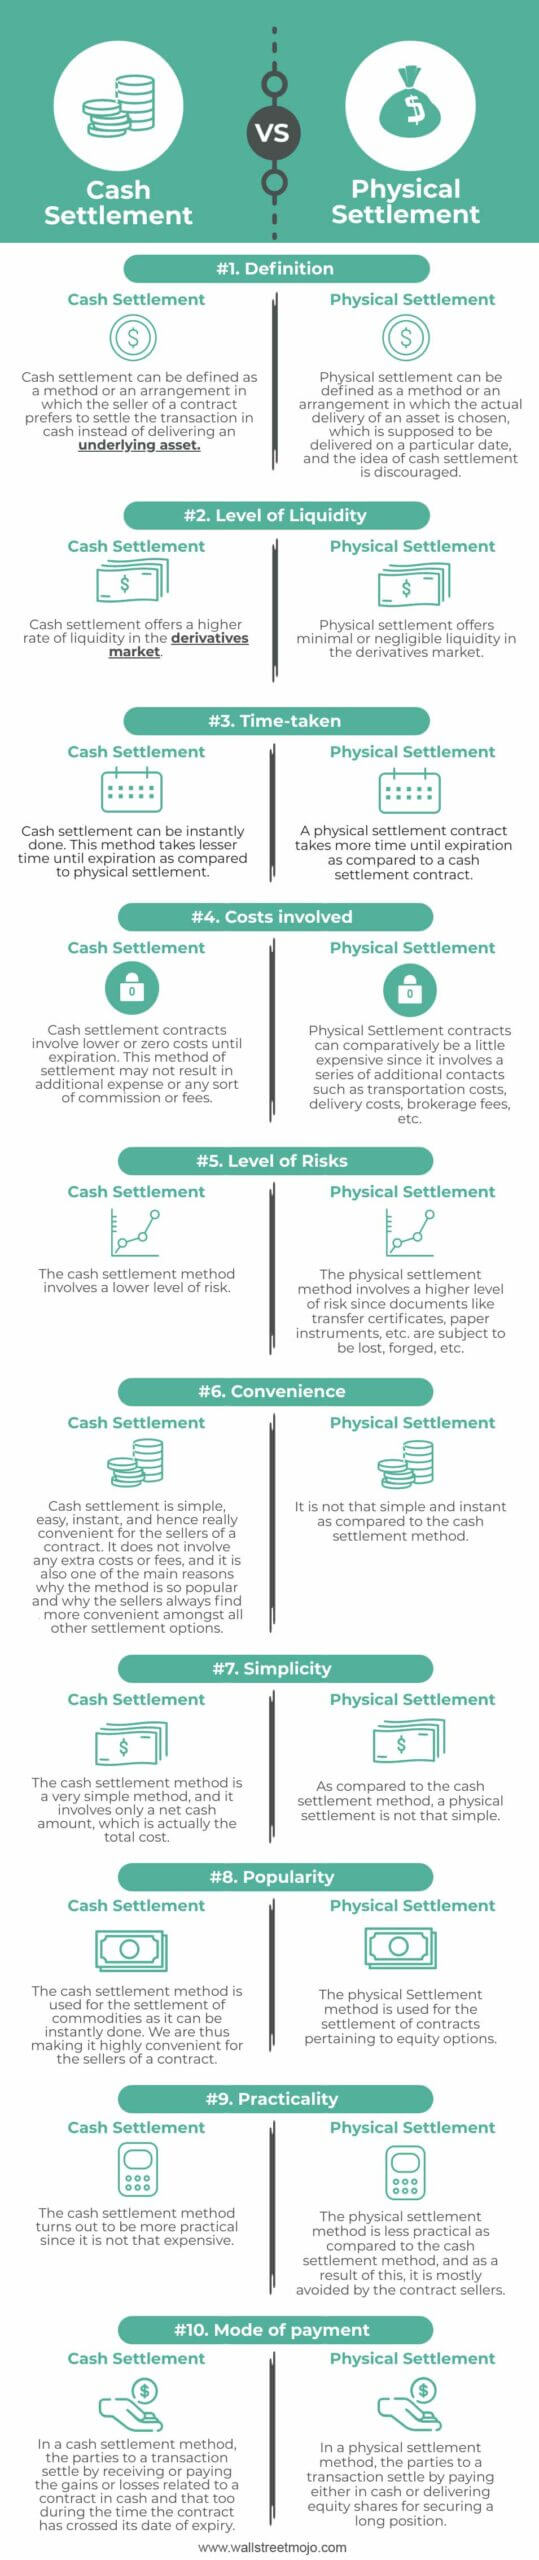 Cash Settlement vs Physical Settlement Infographics 